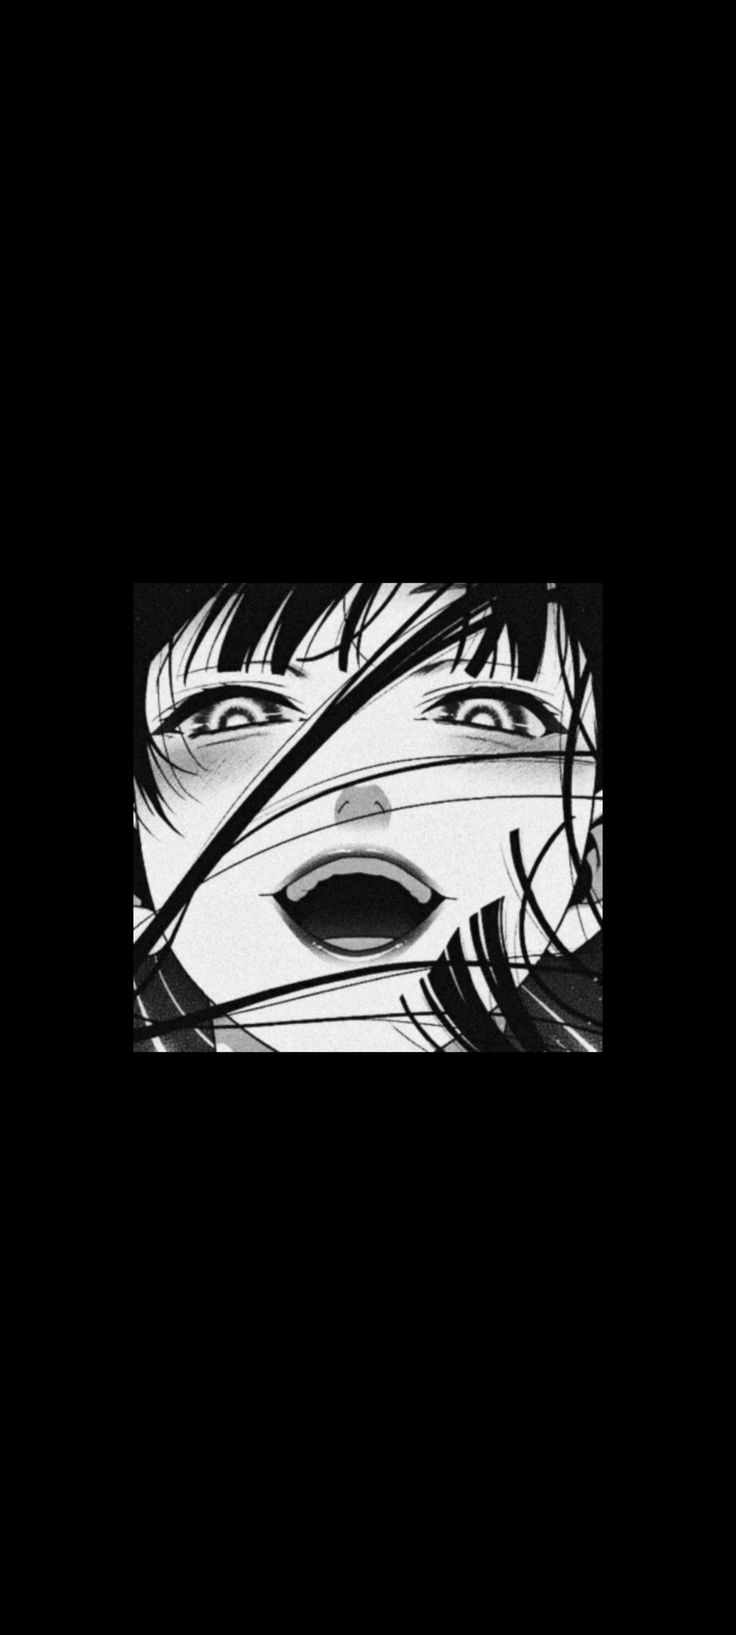 kakegurui wallpaper black white aeshetic Tumblr. Black wallpaper iphone dark, Anime, Anime wallpaper iphone